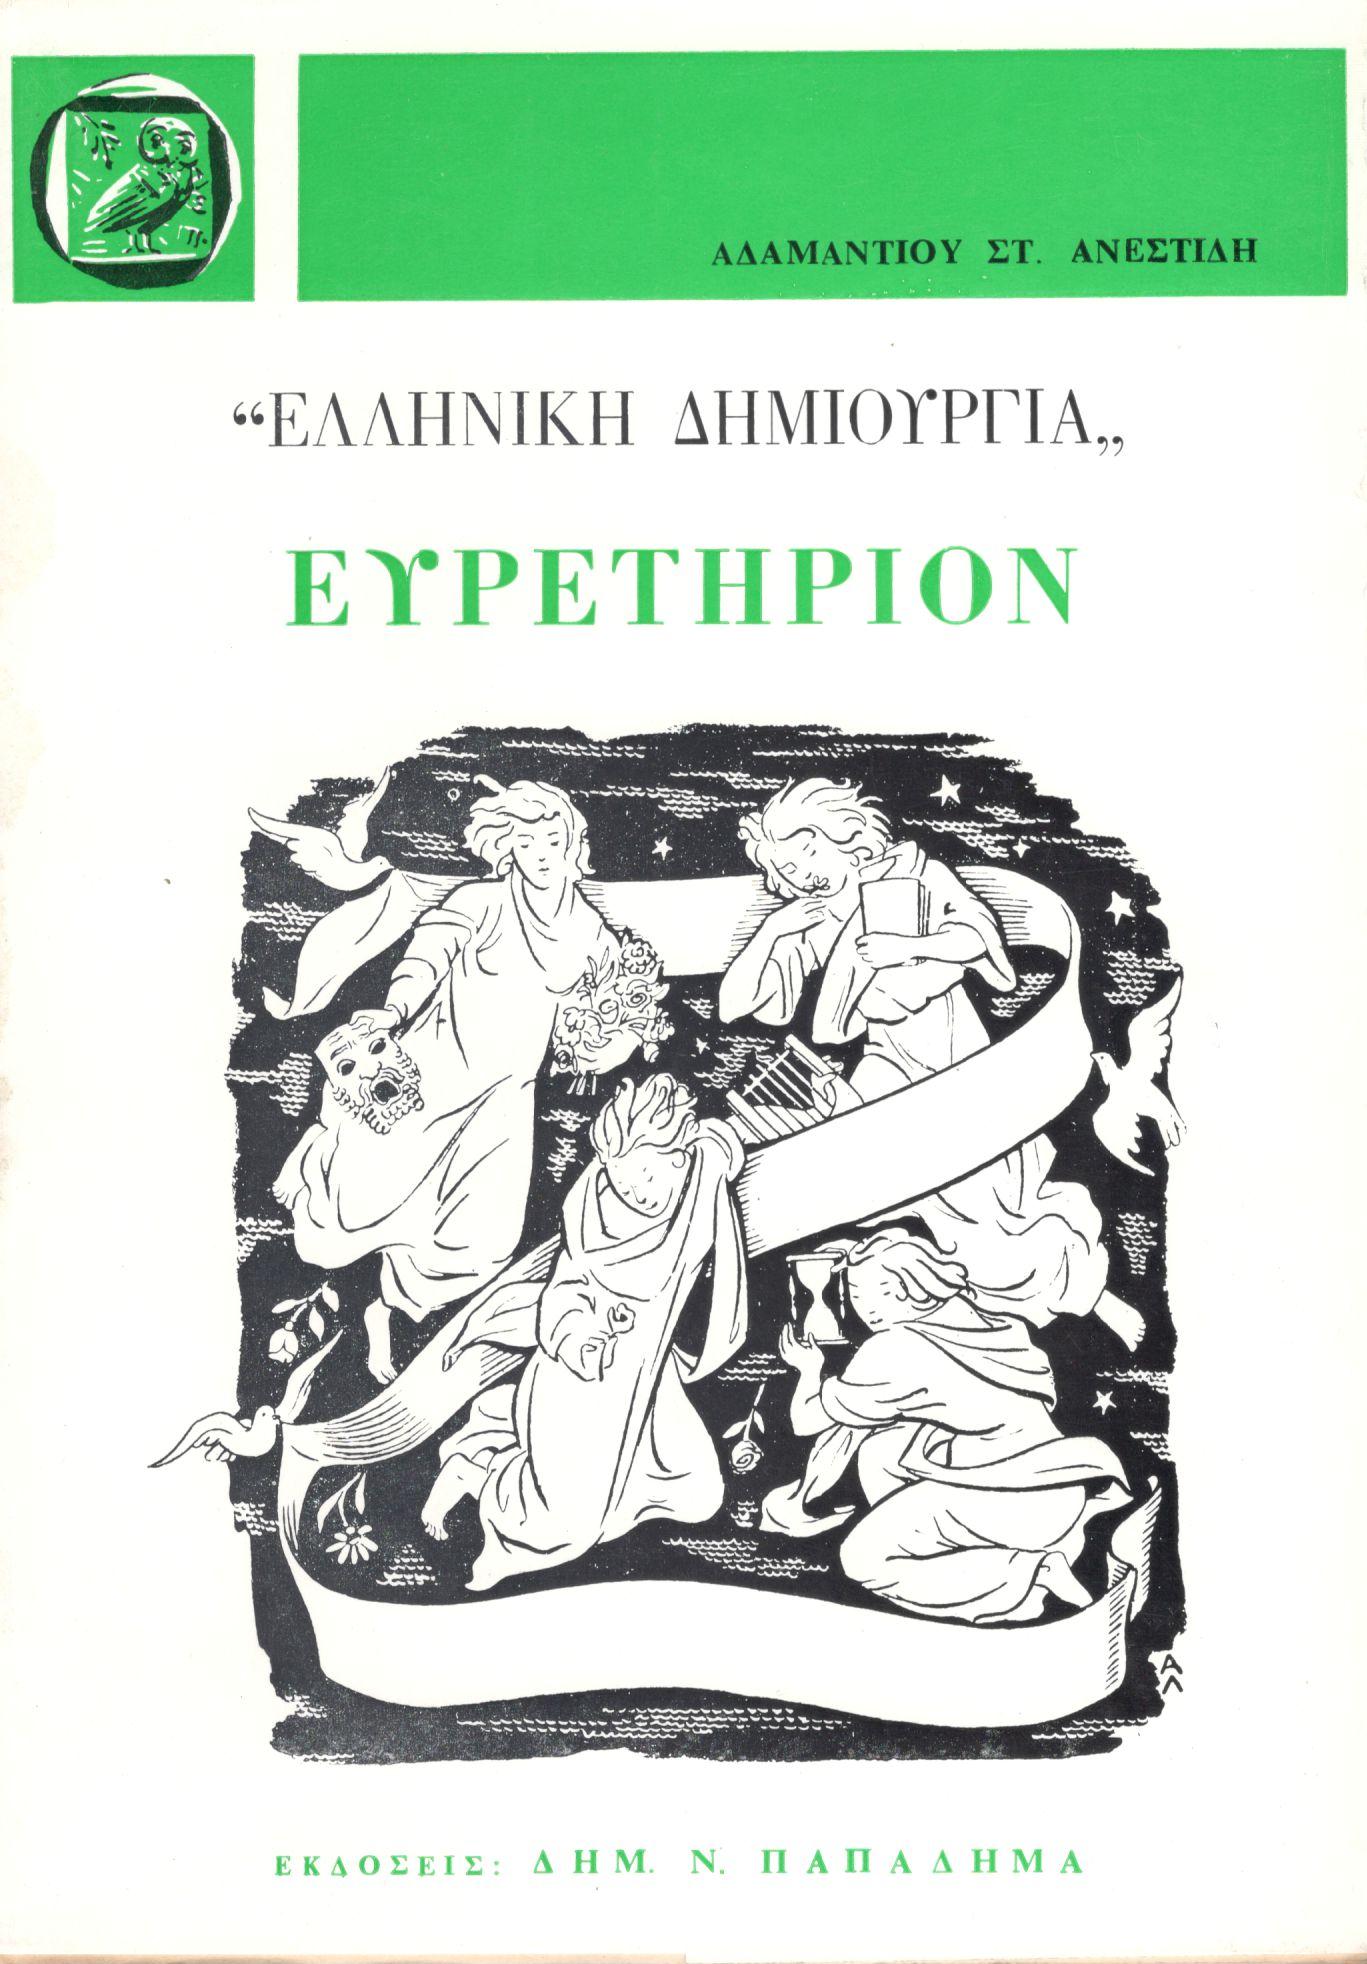 Ευρετήριον περιοδικού Ελληνική Δημιουργία